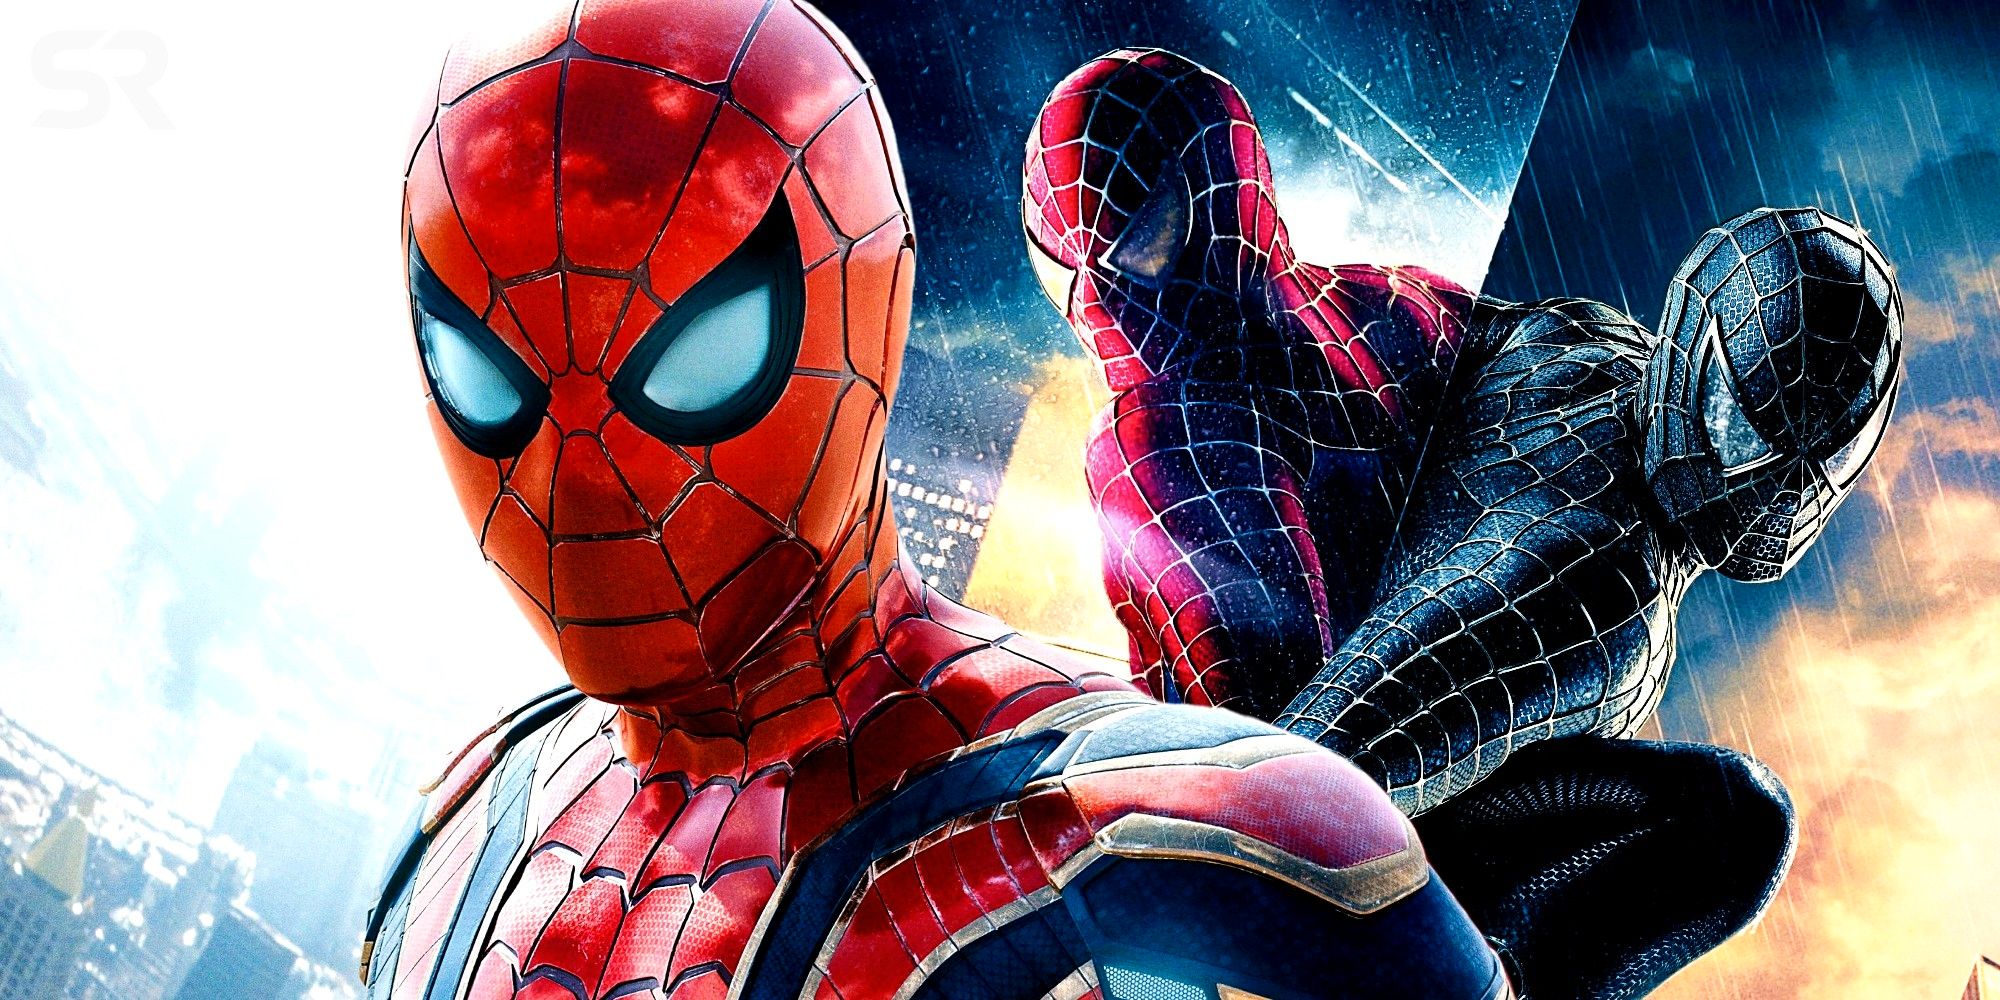 10 cosas importantes que tendrían que estar en un cuarto Sam Raimi Spider-Man, según Reddit